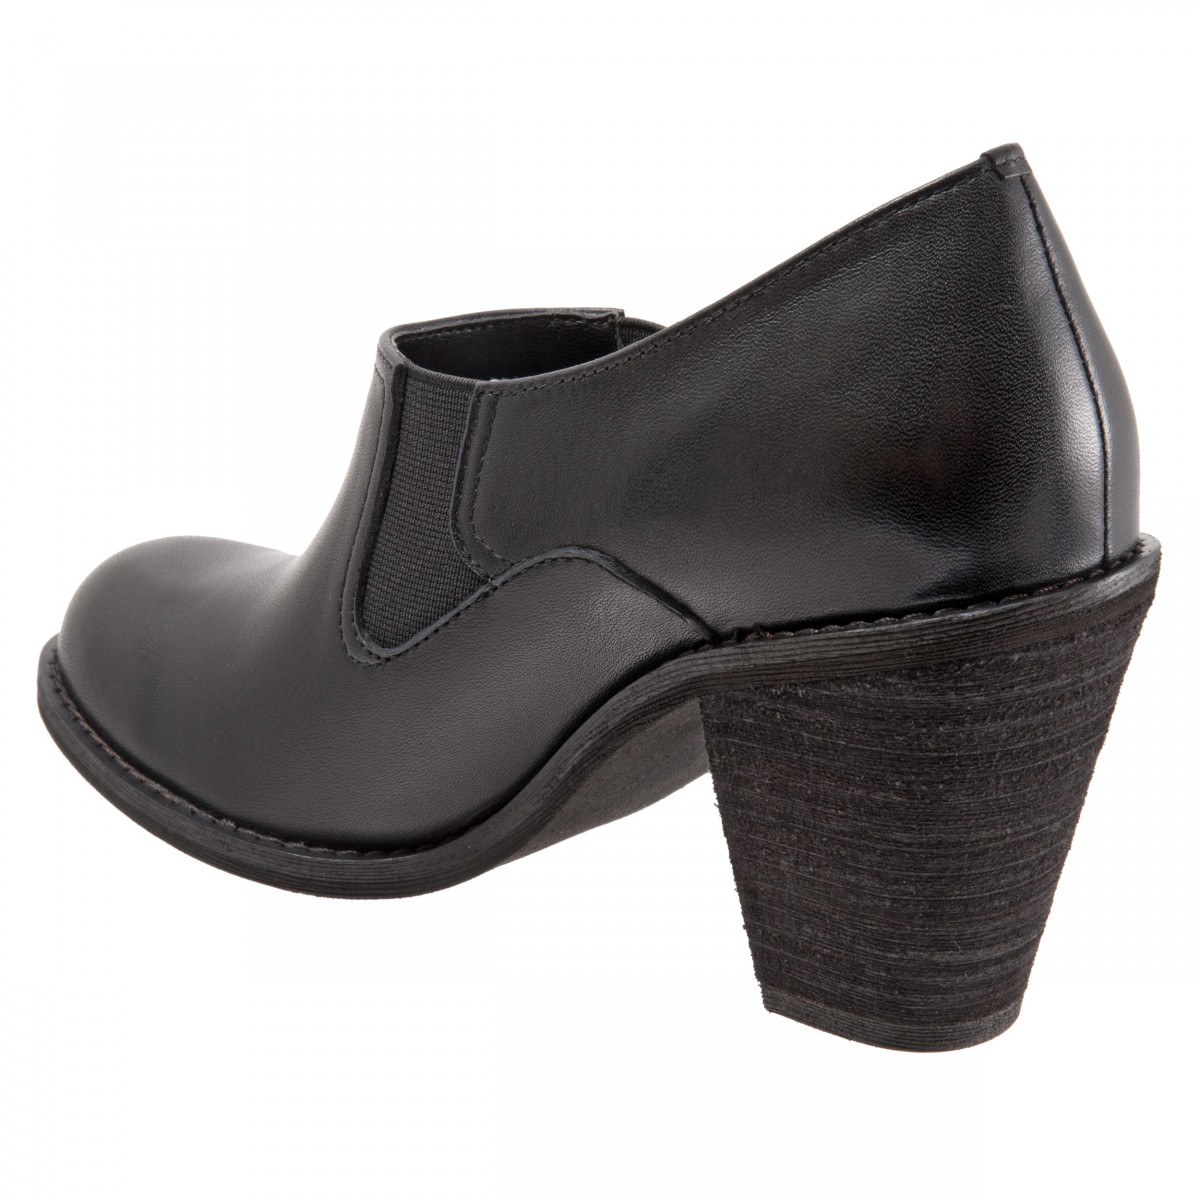 Softwalk Fargo Women's Cushioned Heel Shoe - Free Shipping